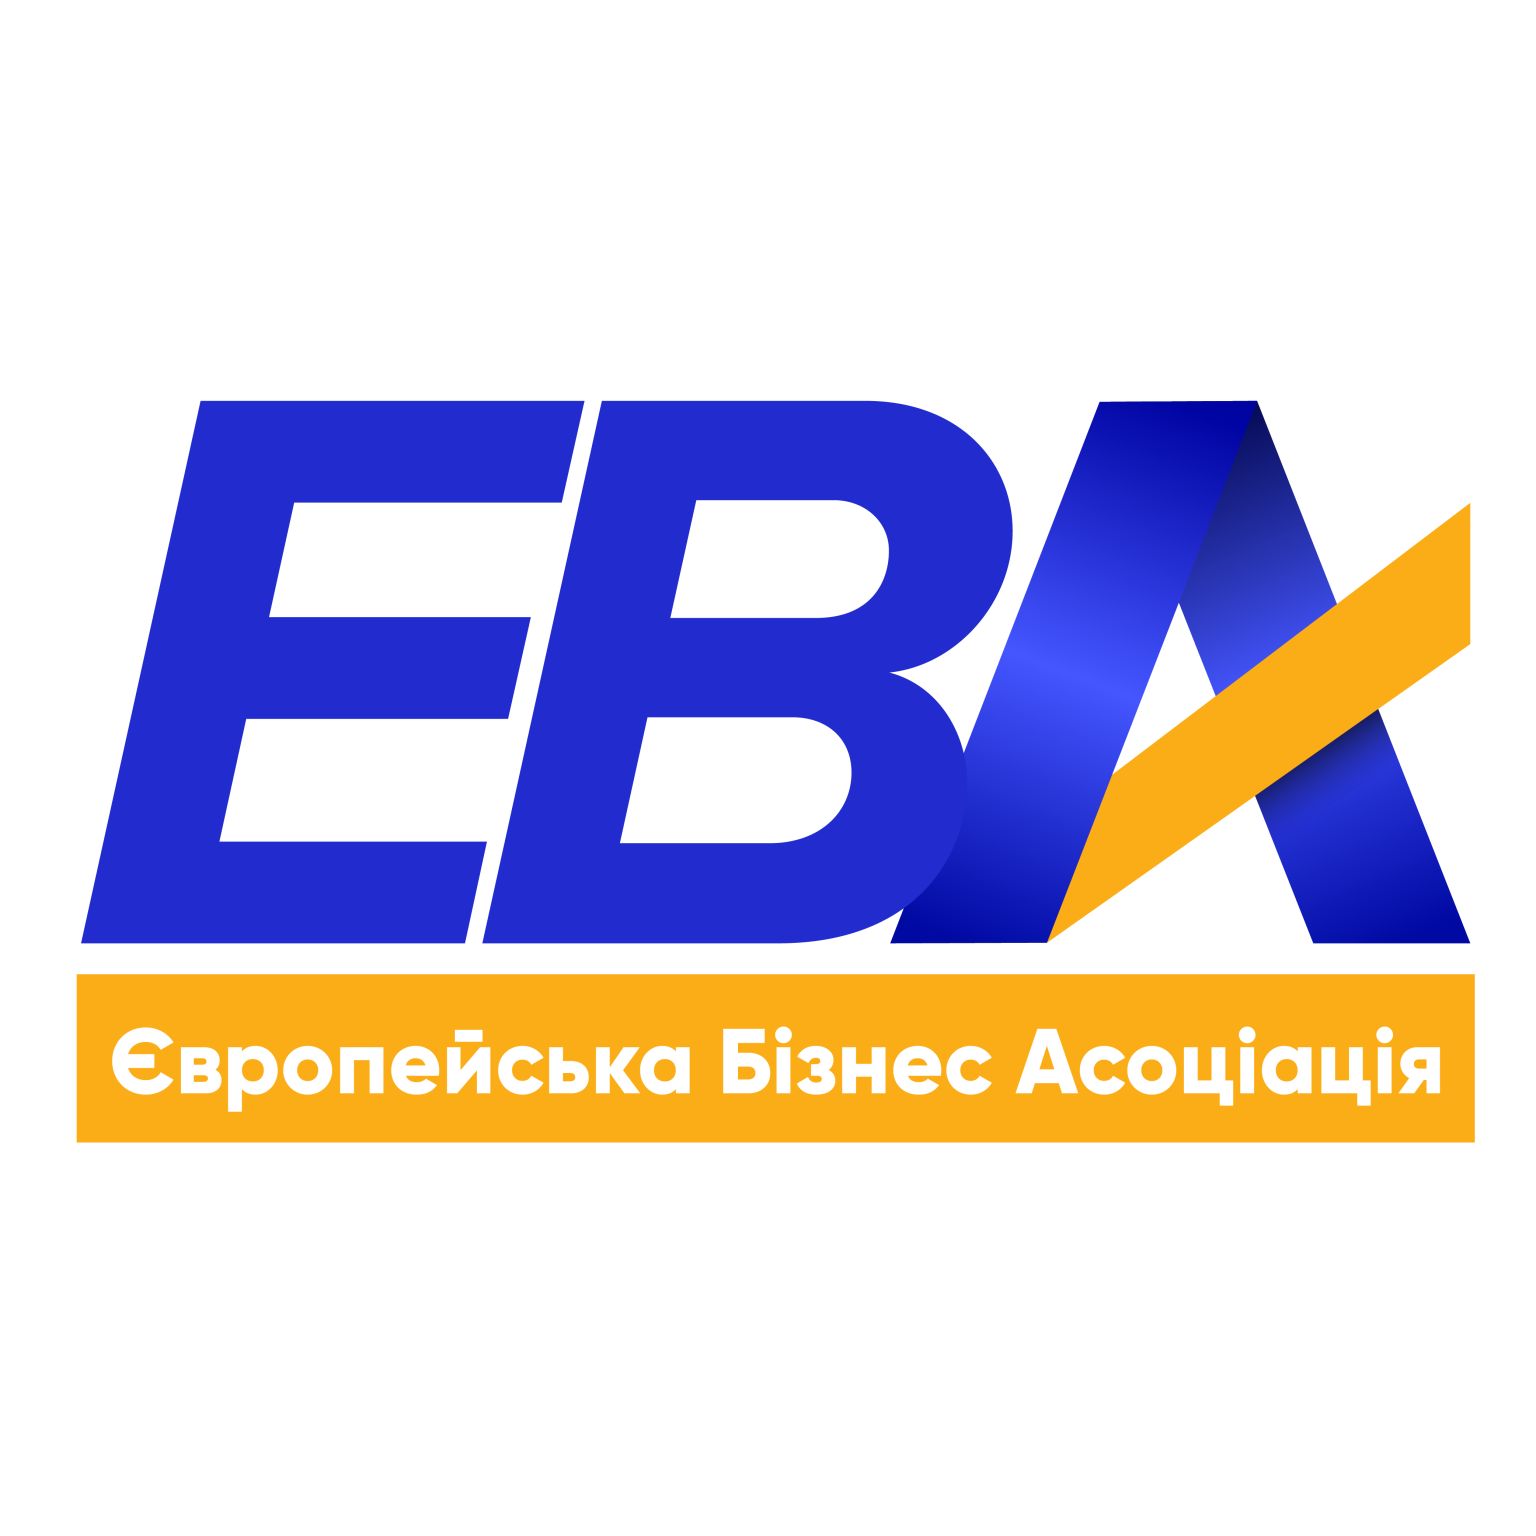 Вступ до EBA – важливий крок для нашої компанії. 